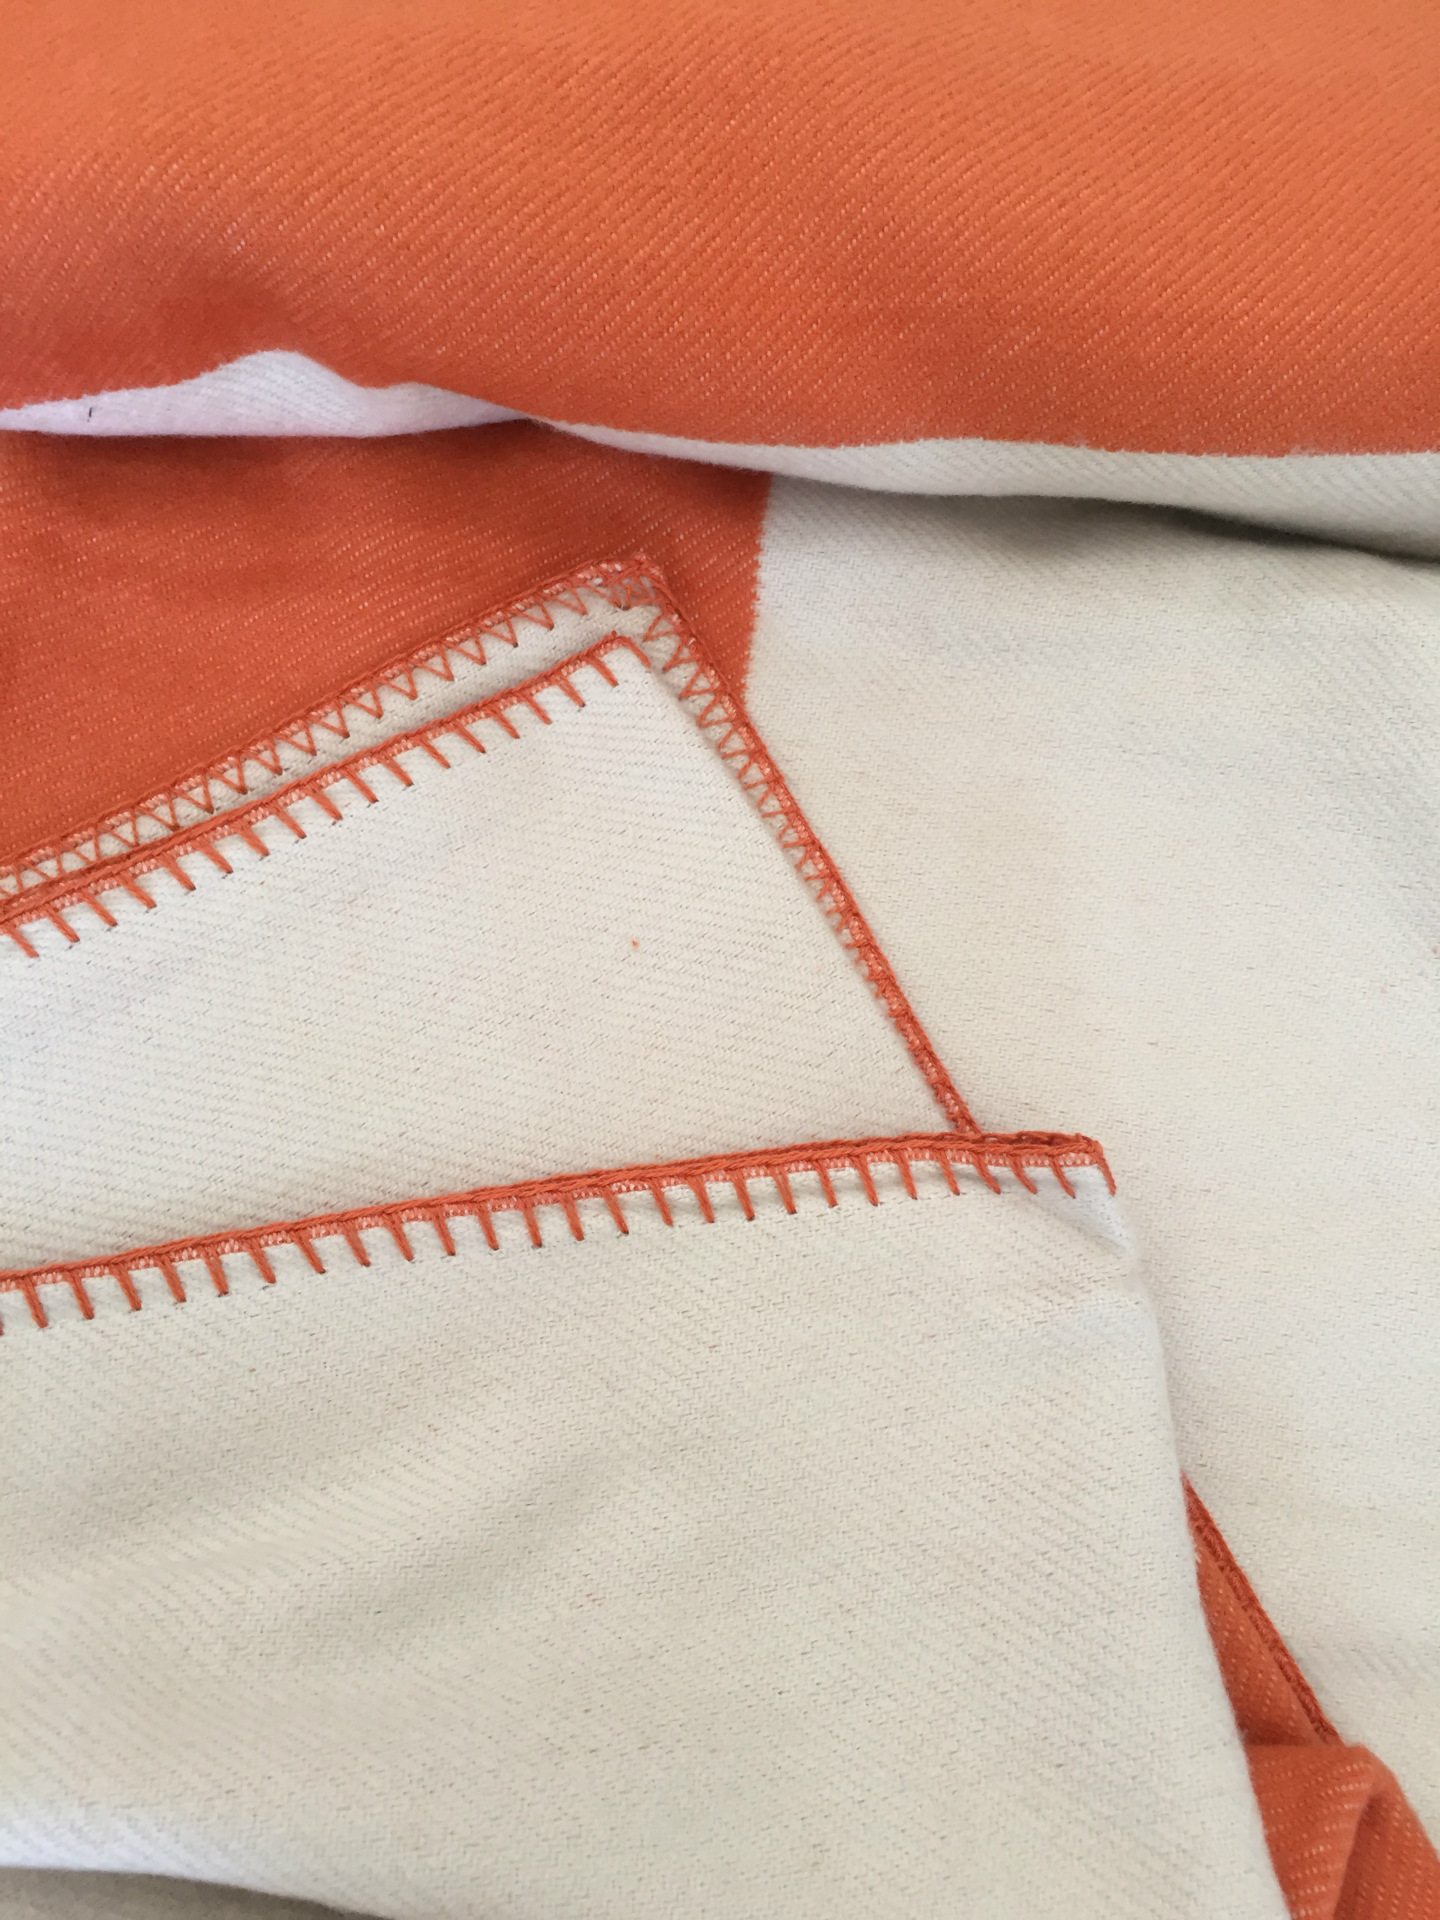 Carta Cobertor Lenço De Lã Macio Xaile Portátil Quente Xadrez Sofá Cama Velo Primavera Outono Feminino Cobertores